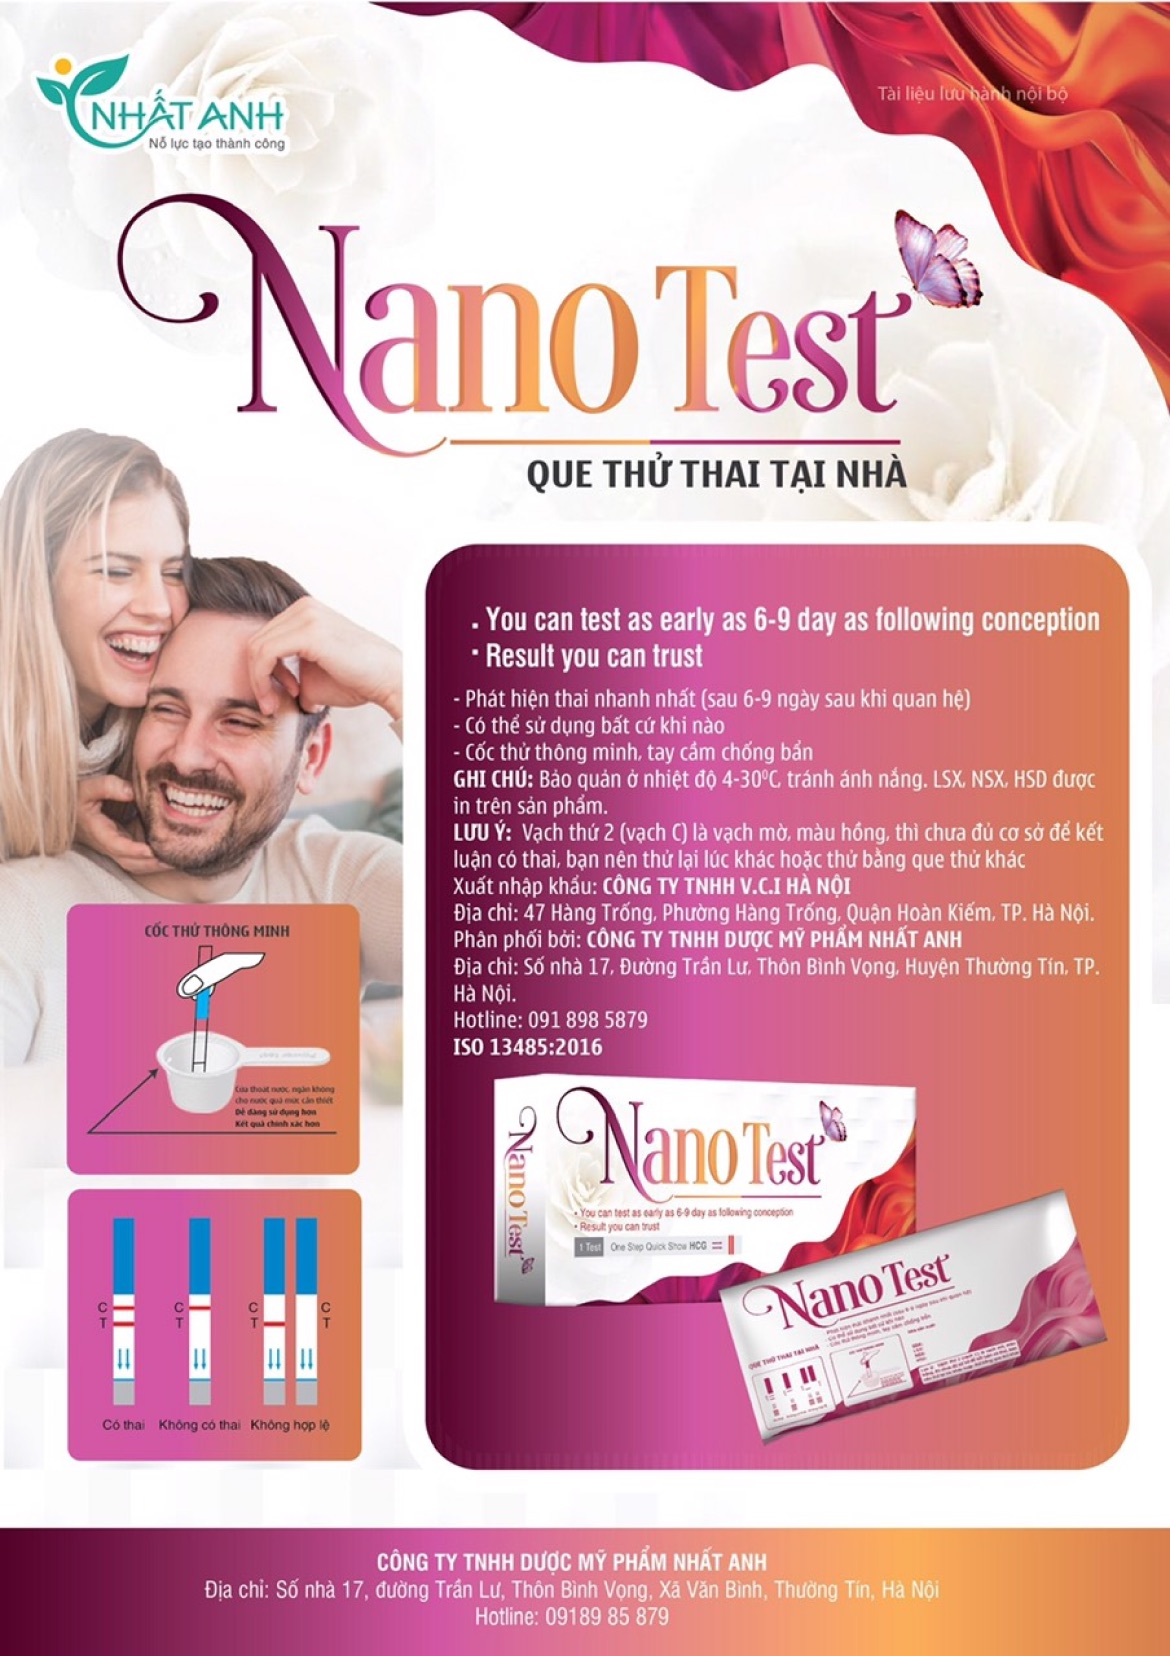 Que thử thai Nano Test